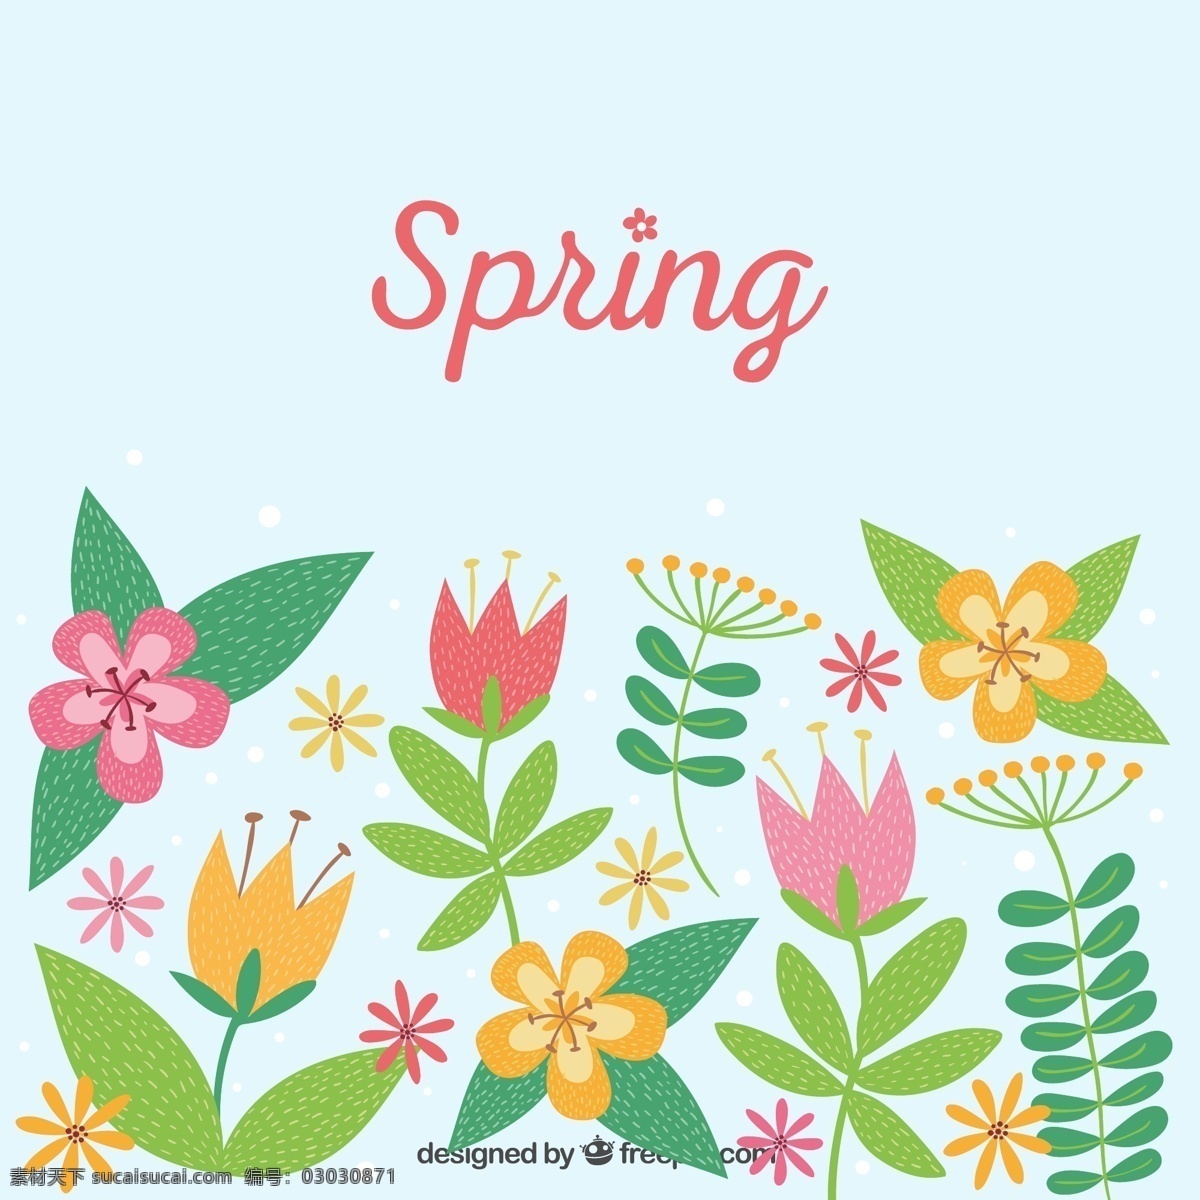 春季 卡通 花卉 矢量 花朵 矢量图 格式 高清图片